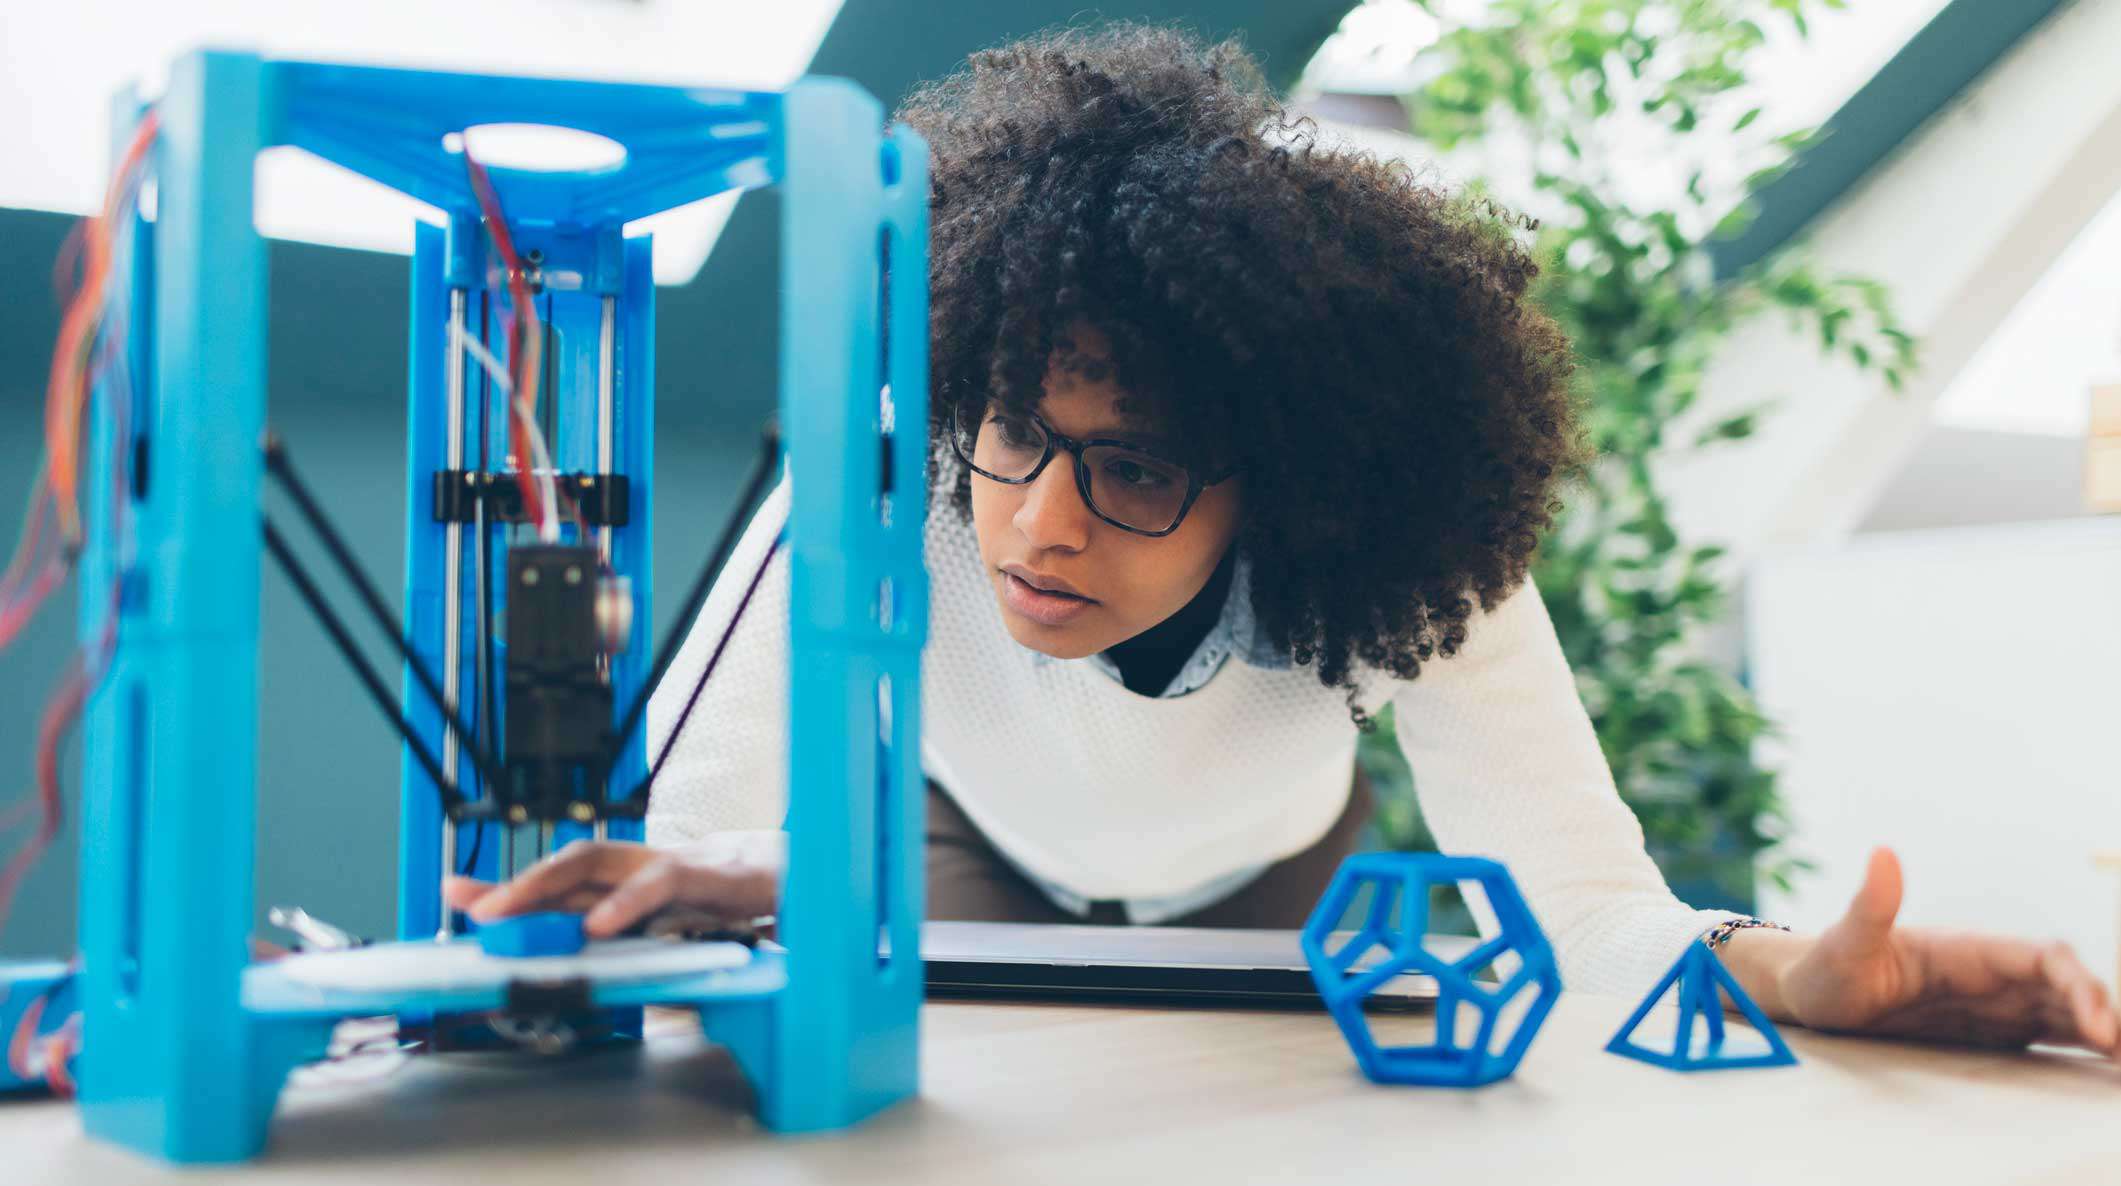 Tvůrce sledující 3D tiskárnu sestavuje součást